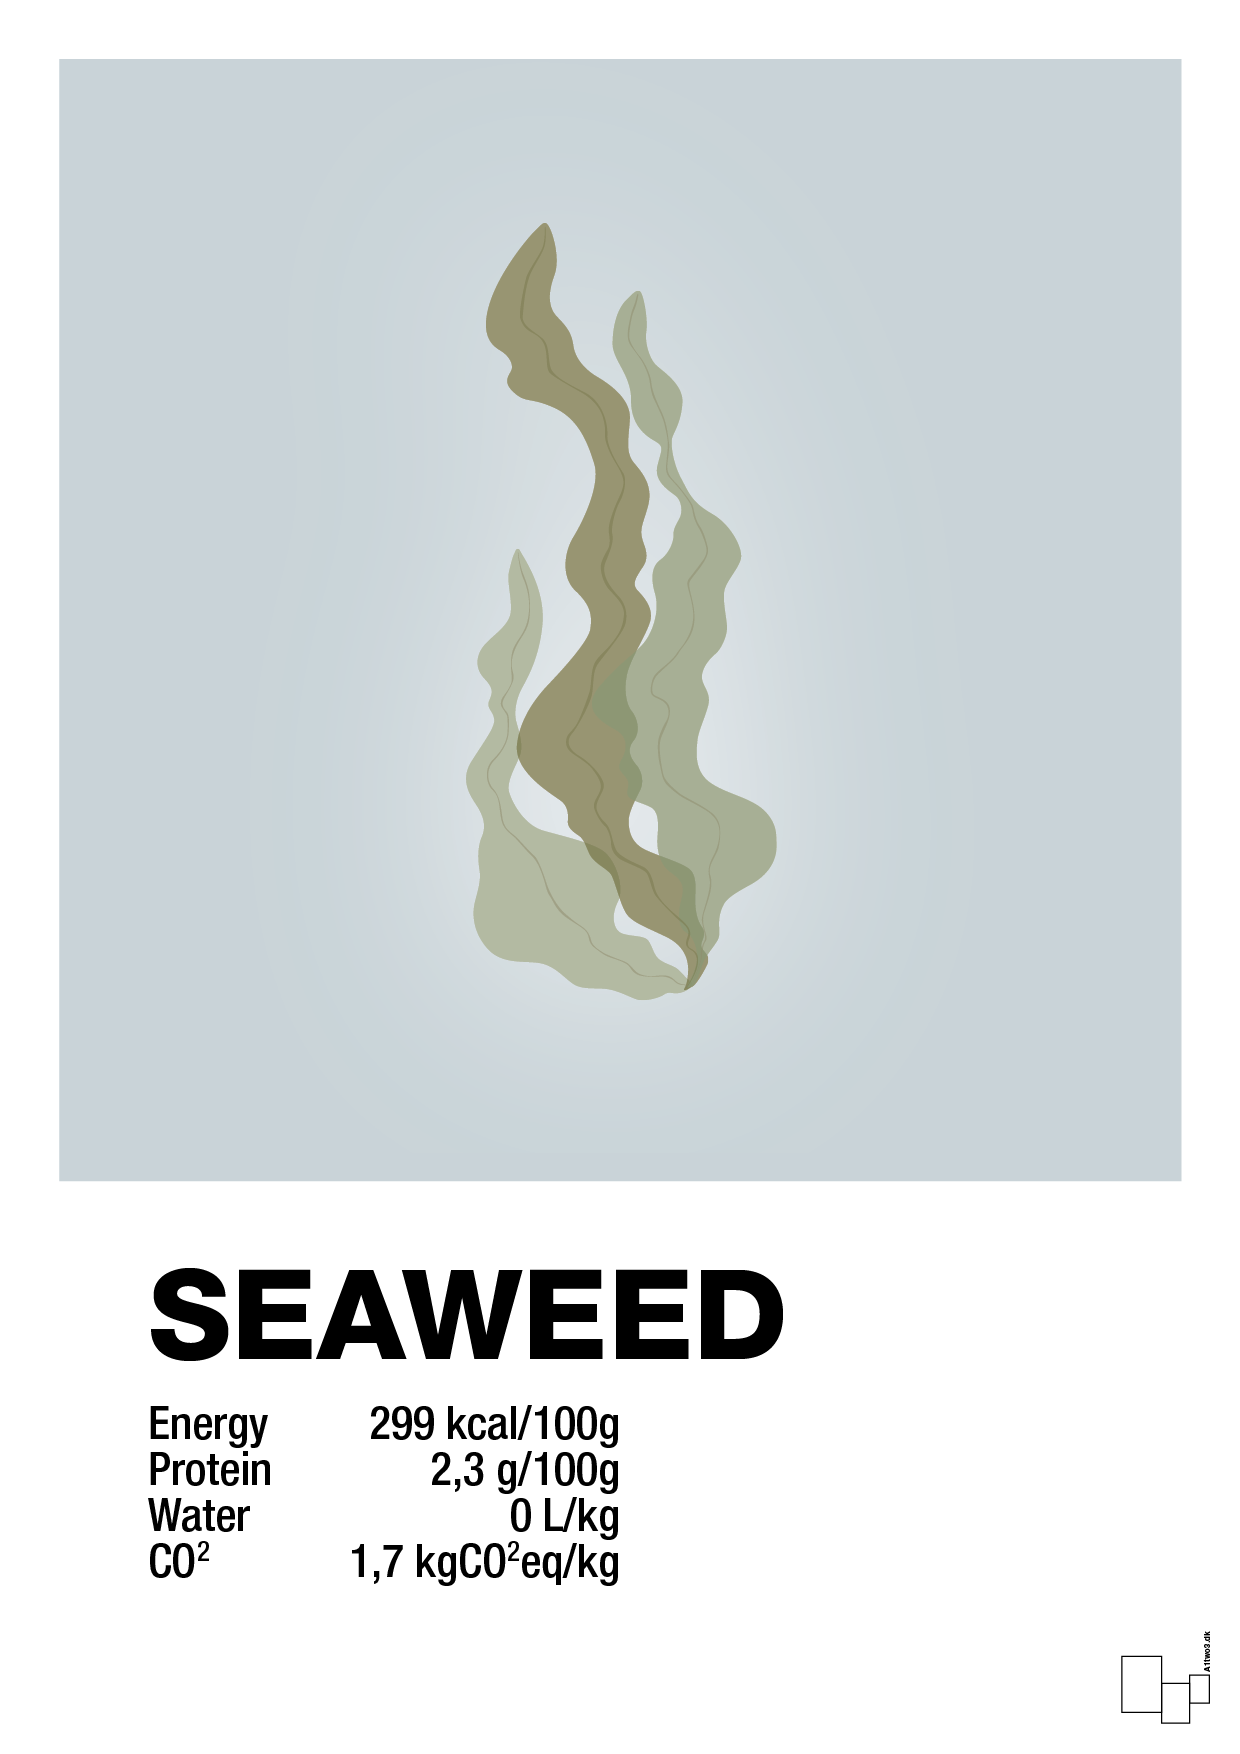 seaweed nutrition og miljø - Plakat med Mad & Drikke i Light Drizzle